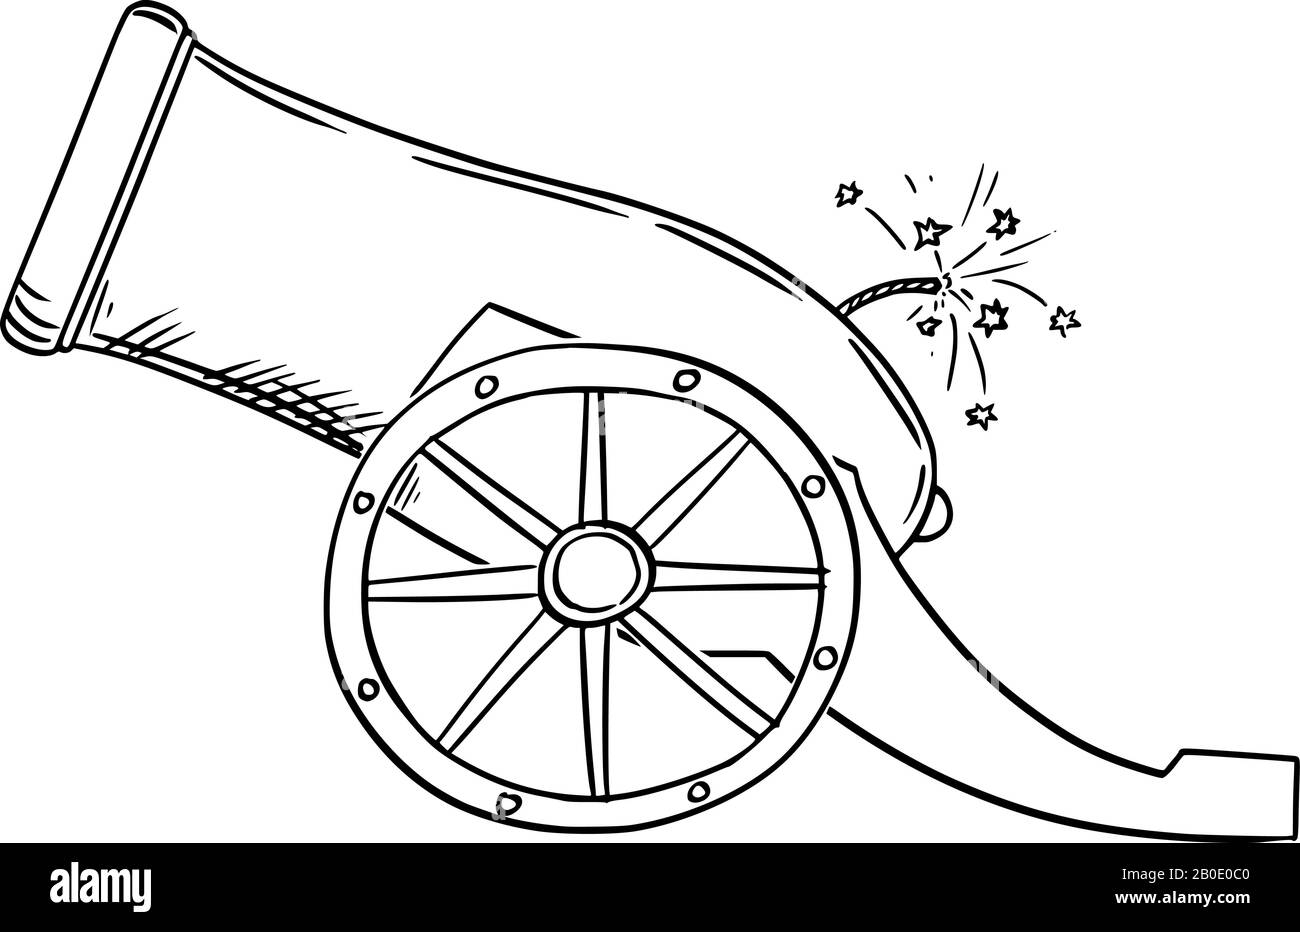 Dessin de dessin vectoriel illustration conceptuelle d'un ancien canon ou canon d'artillerie, vue latérale. Illustration de Vecteur